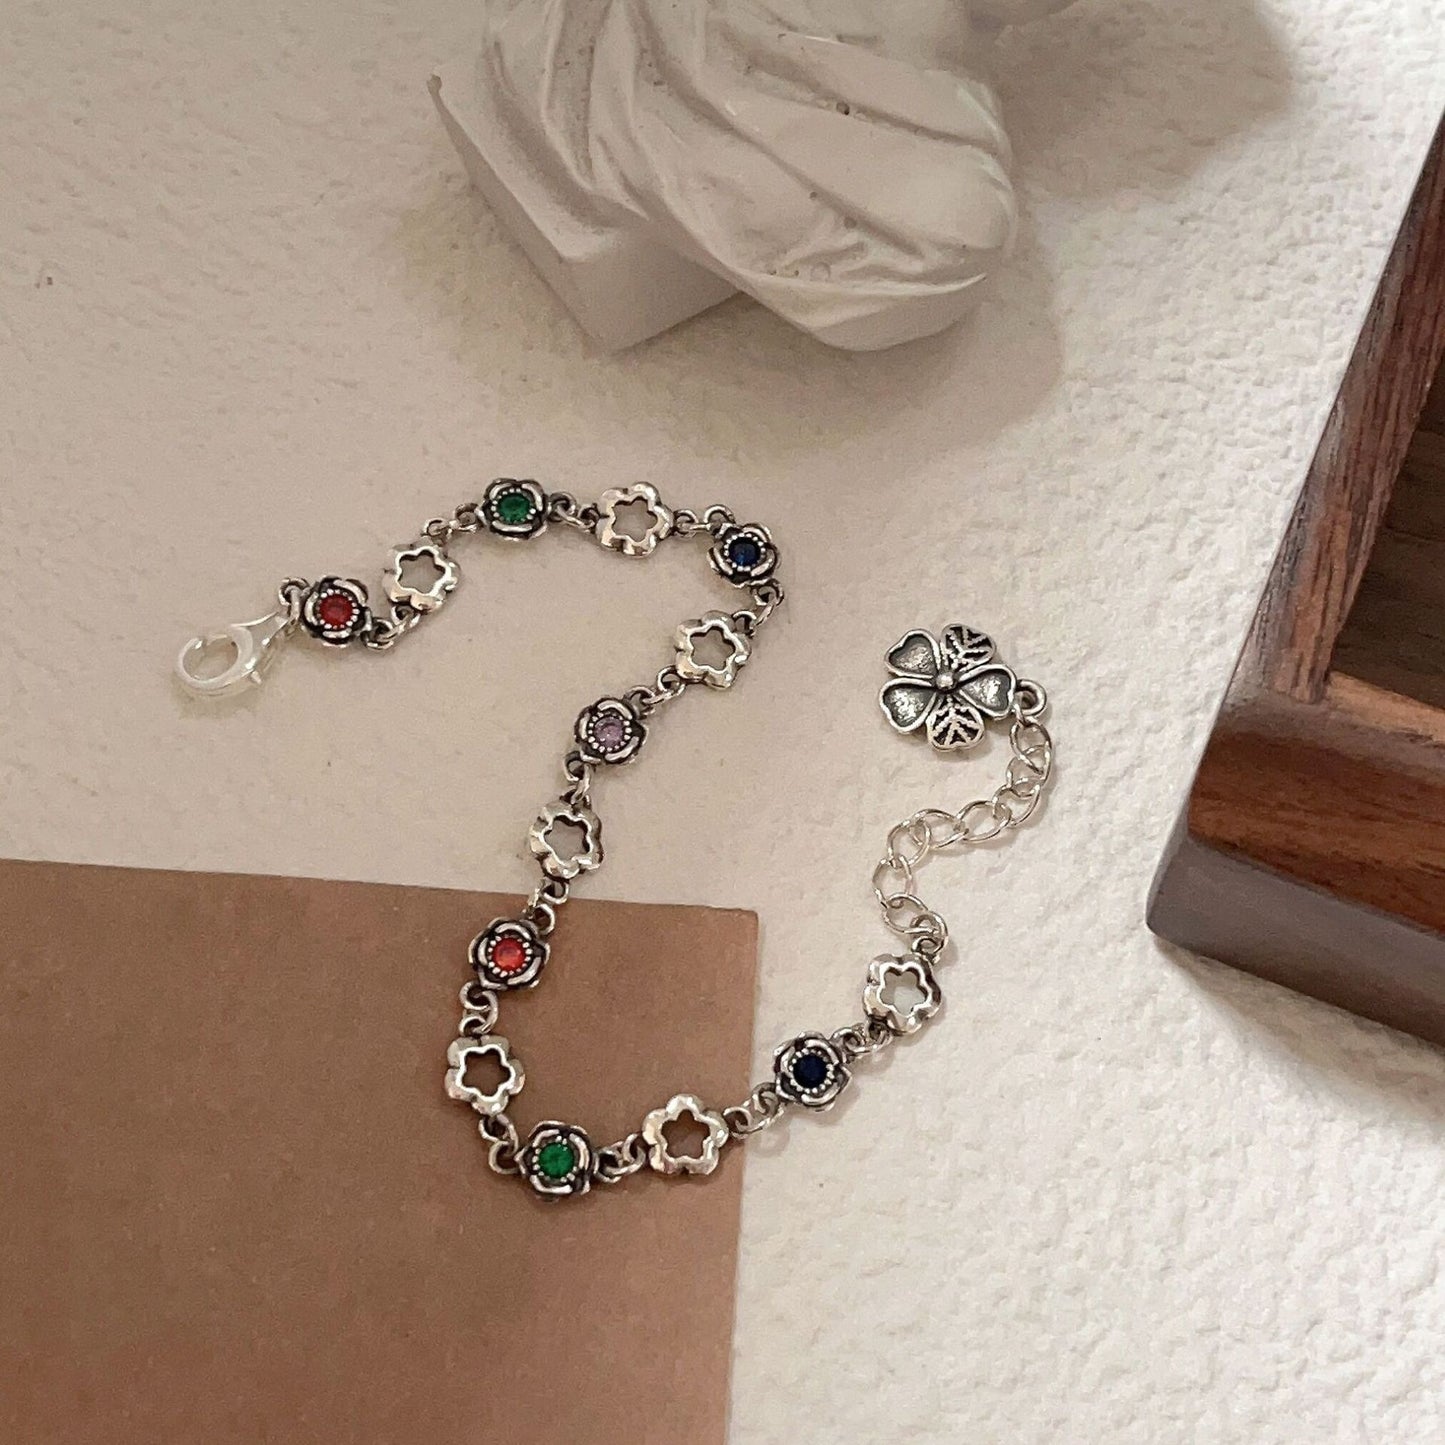 Jewelry - Franziska Silver Star Necklace